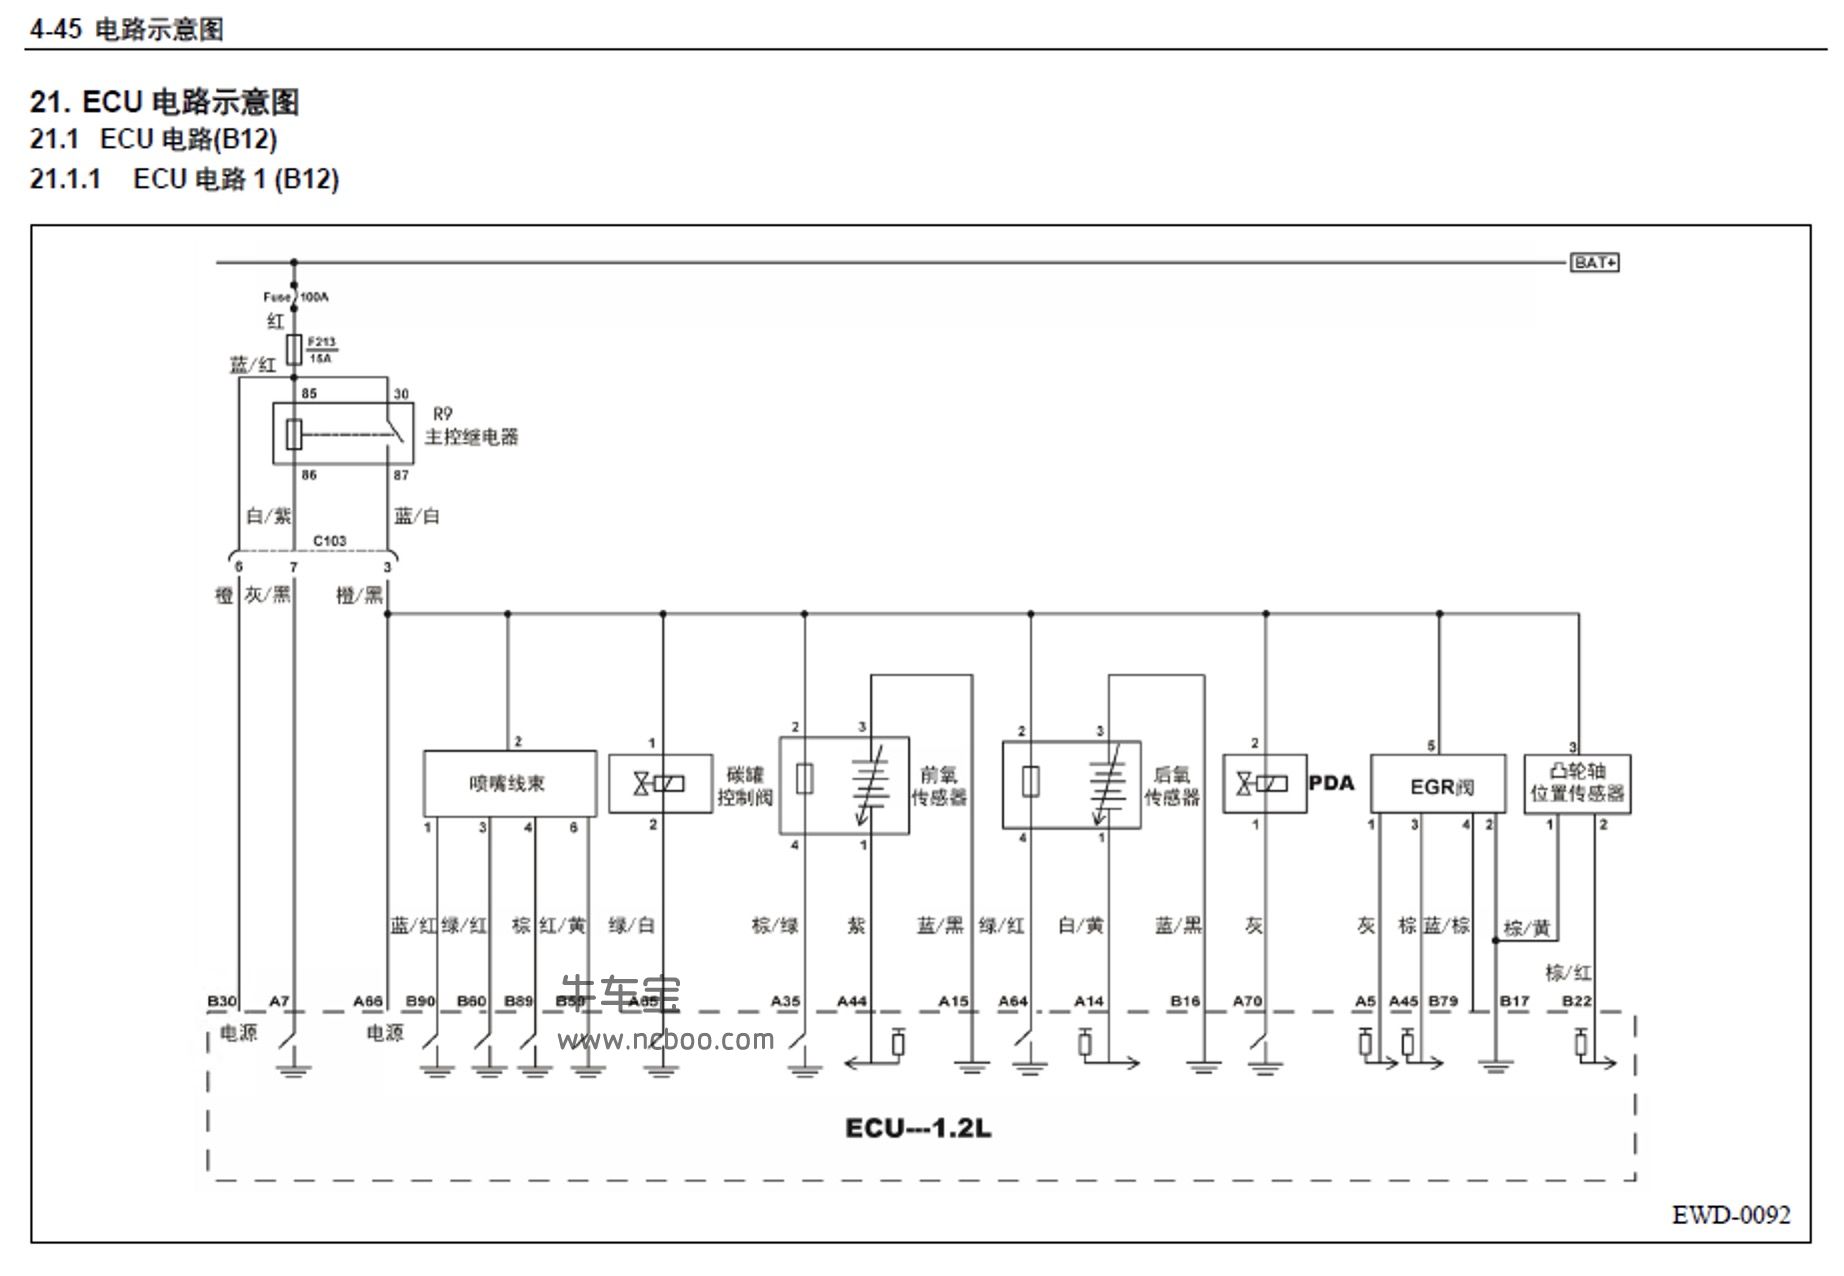 2013-2014款五菱宏光S(CN112)原厂维修手册和电路图资料